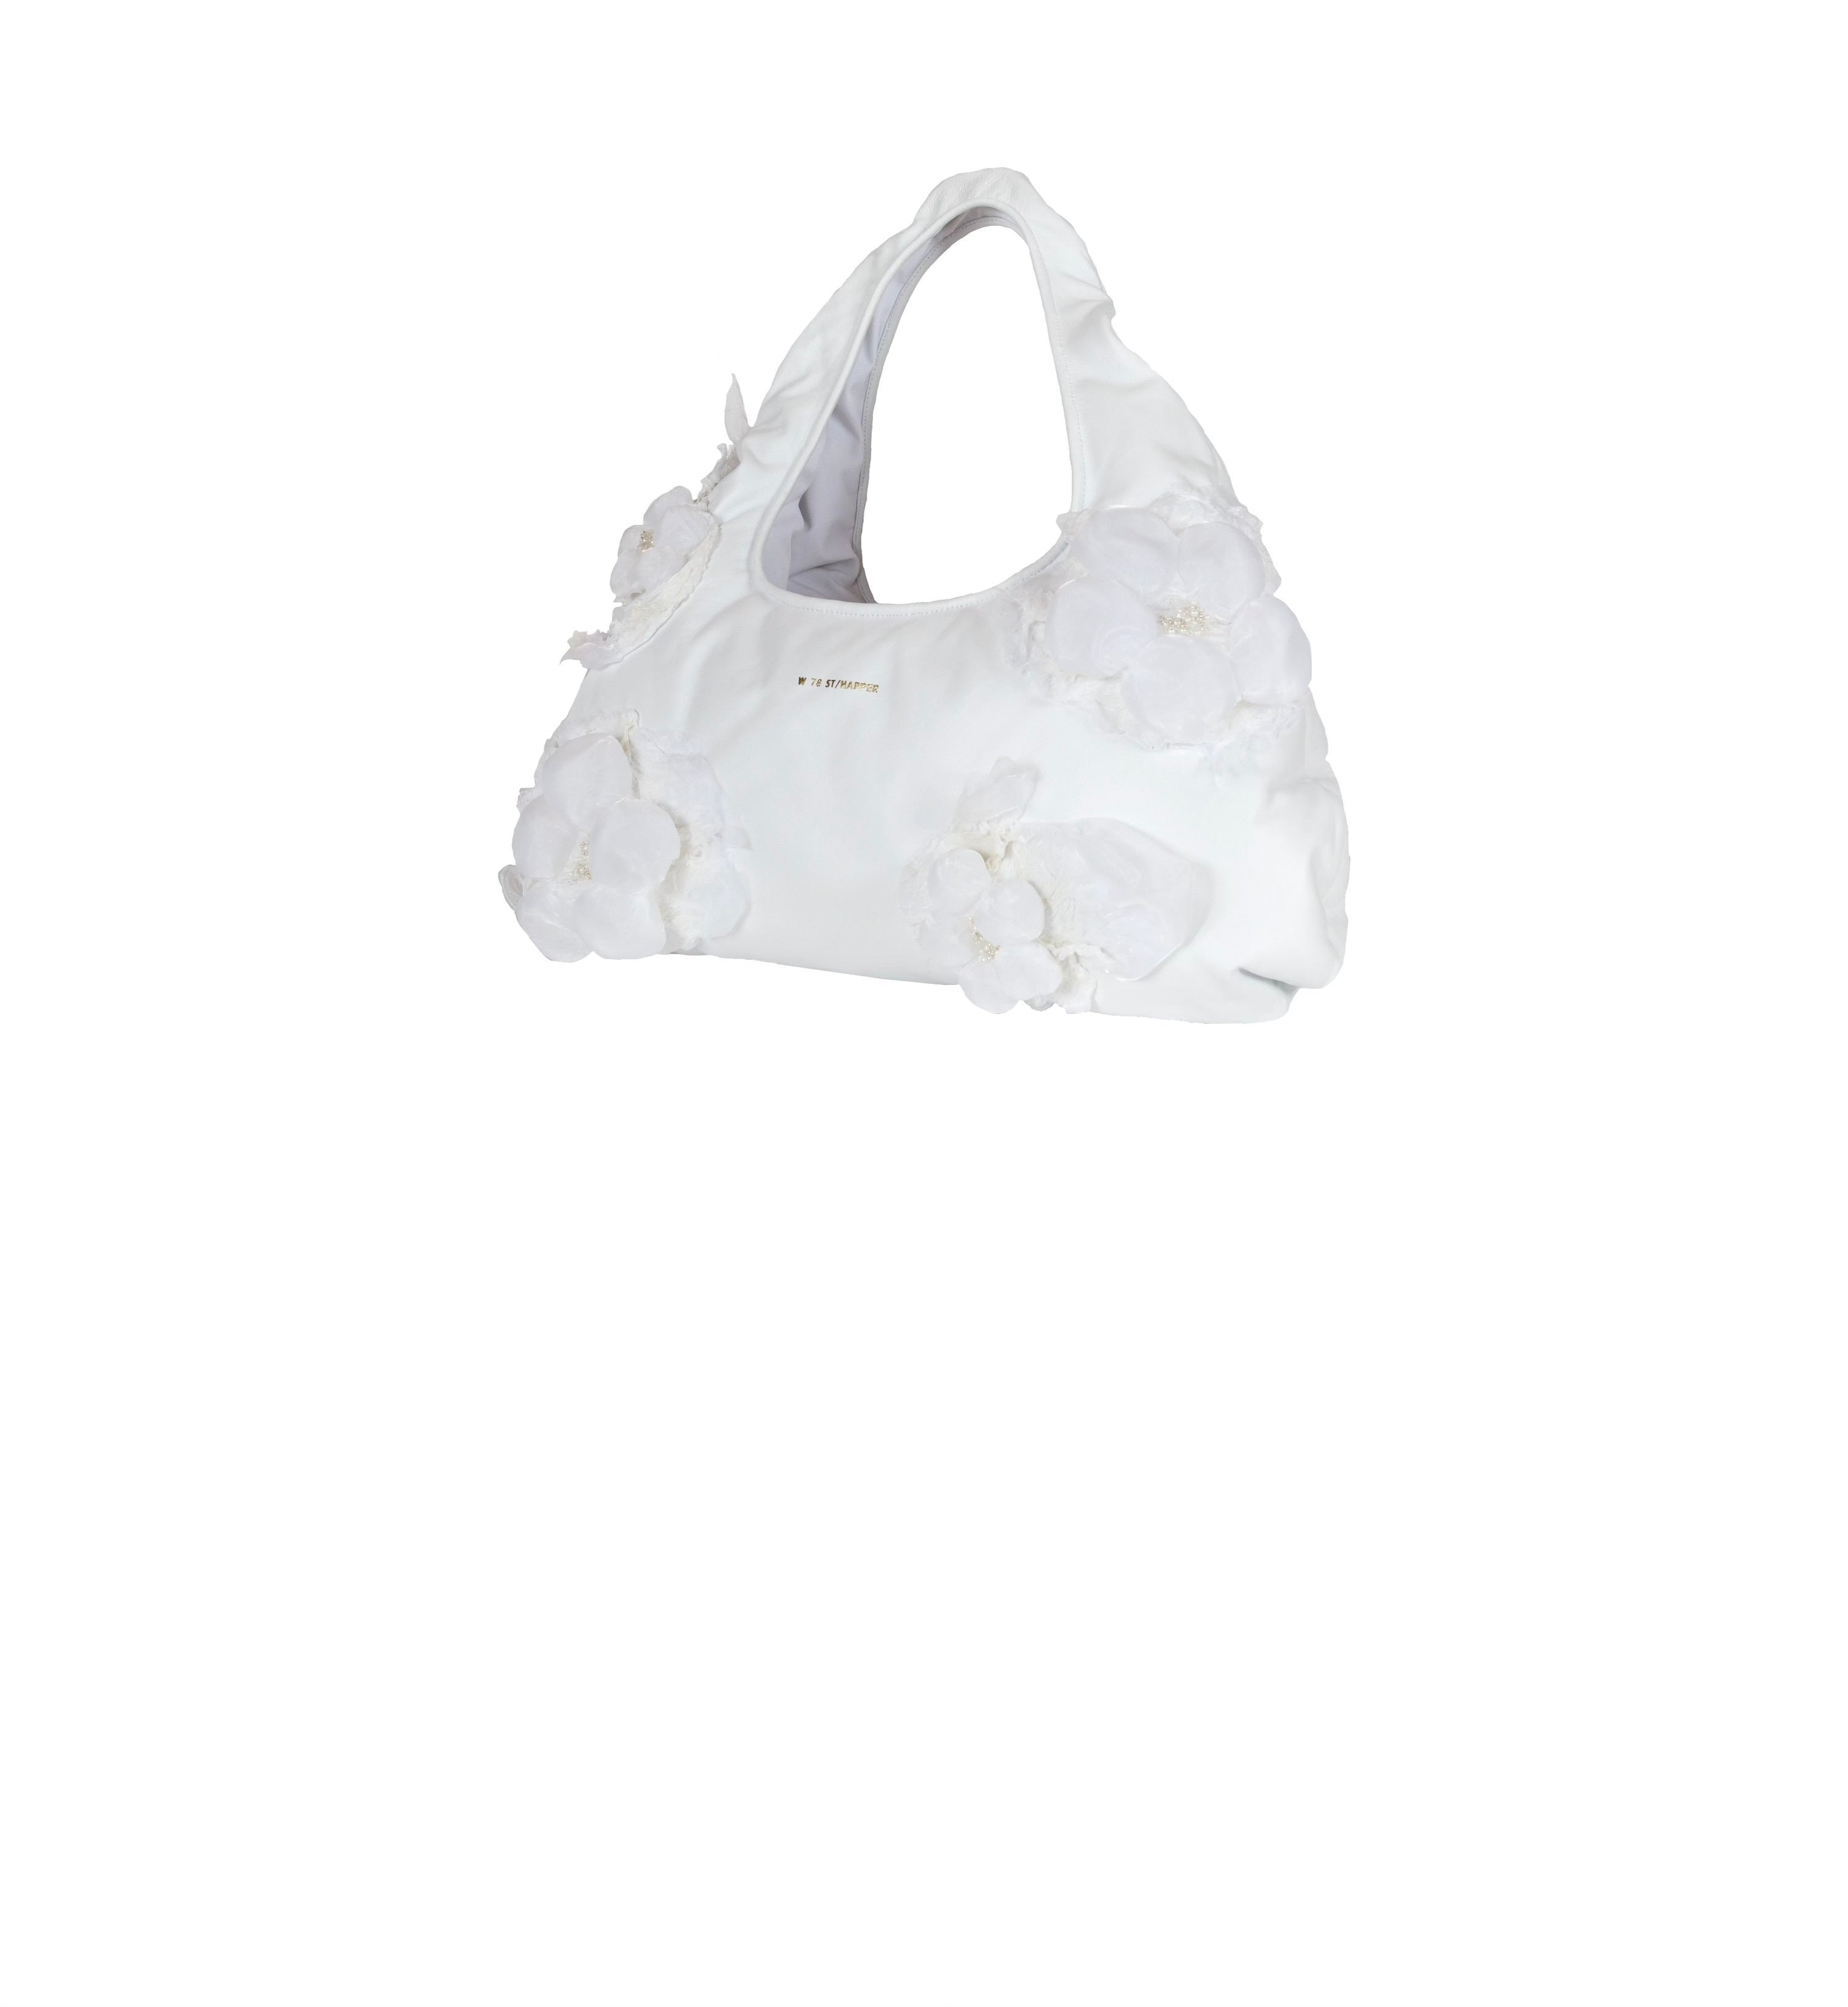 Superbloom Cloud Bag Large White